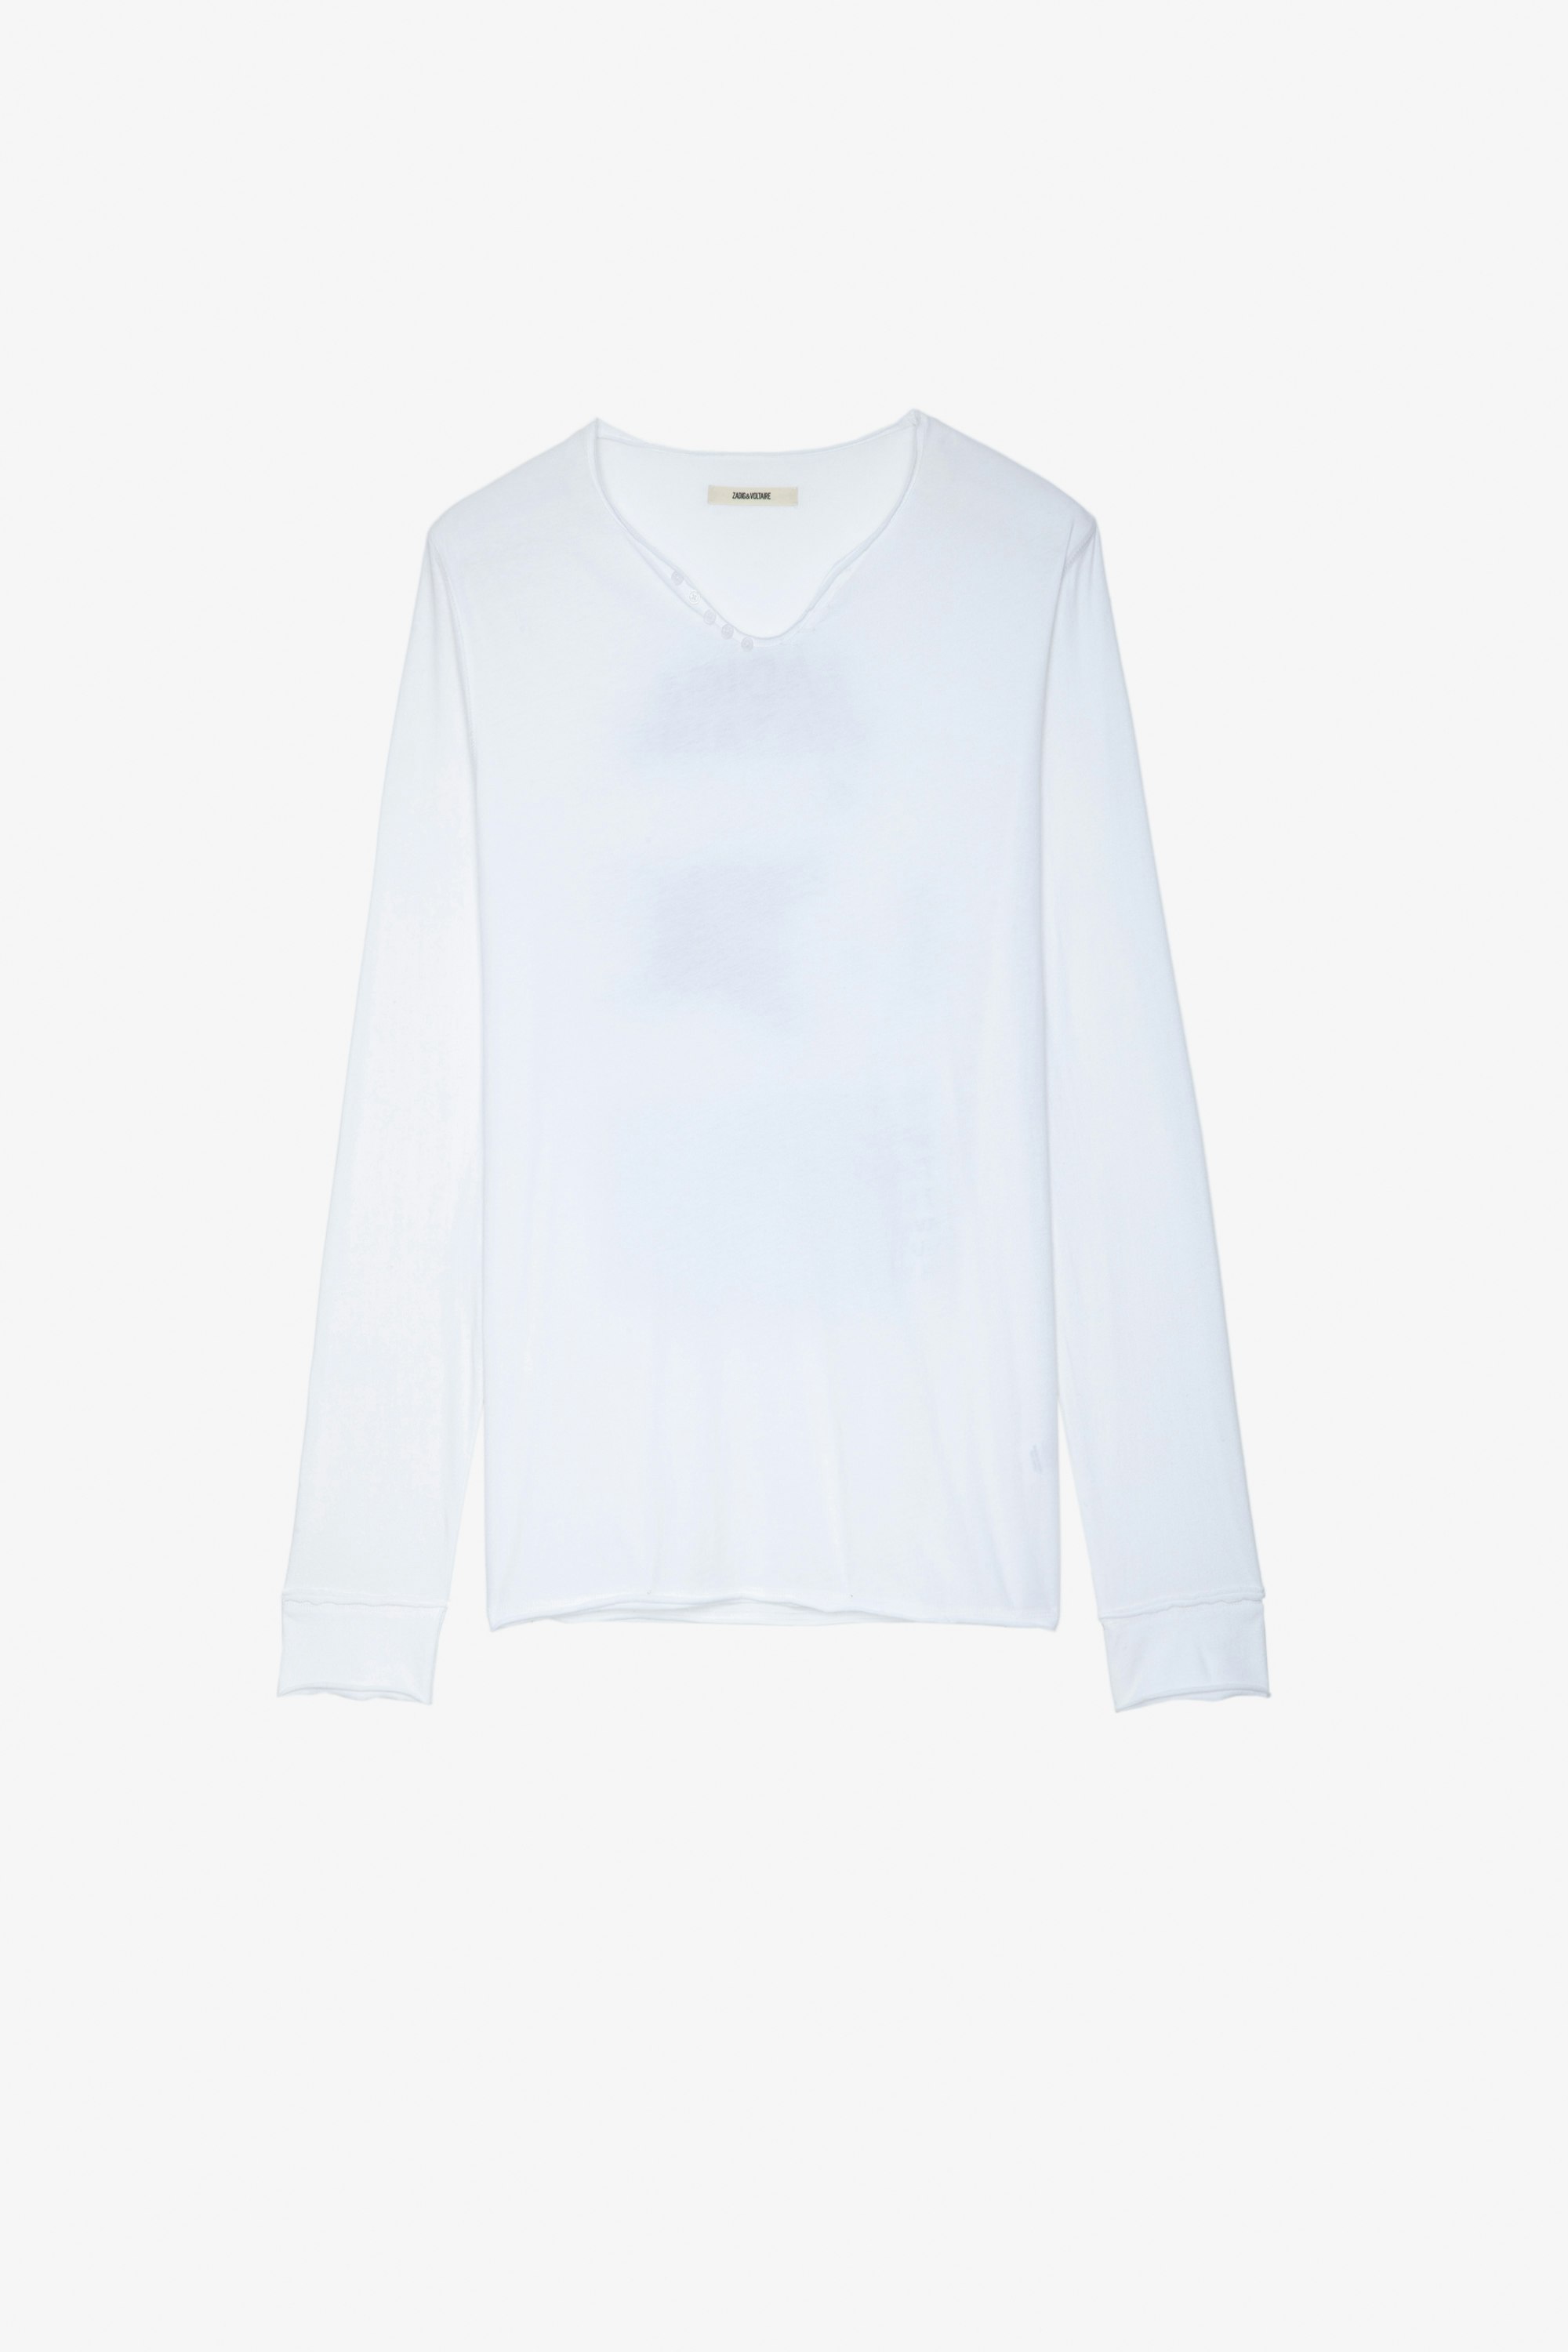 T-Shirt Monastir Herren-T-Shirt aus weißer Baumwolle mit Henley-Ausschnitt und langen Ärmeln